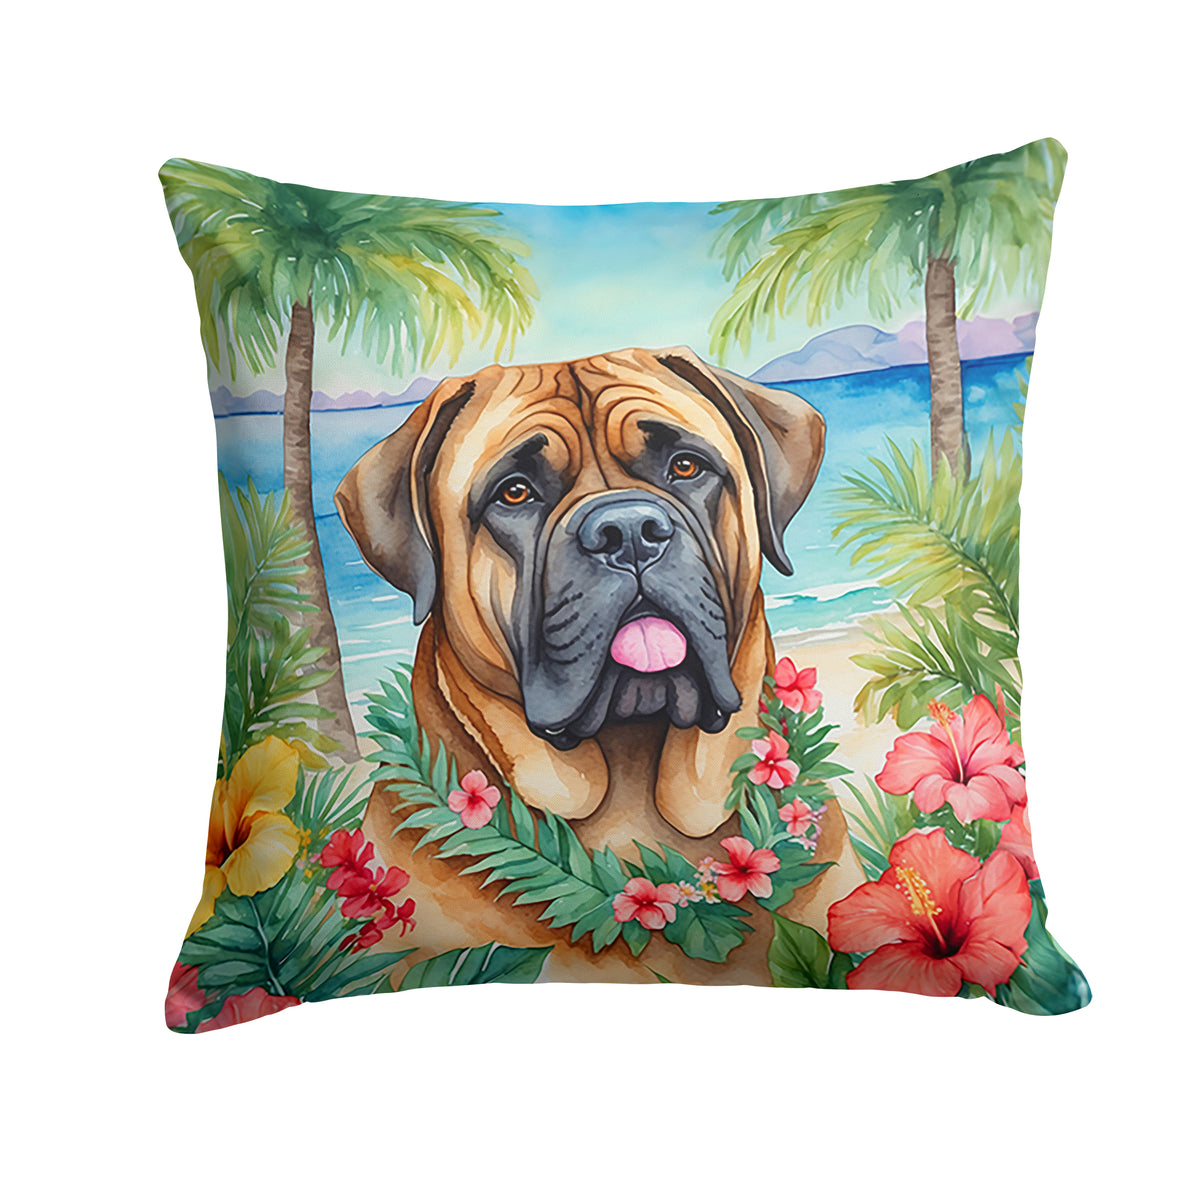 Buy this Mastiff Luau Throw Pillow